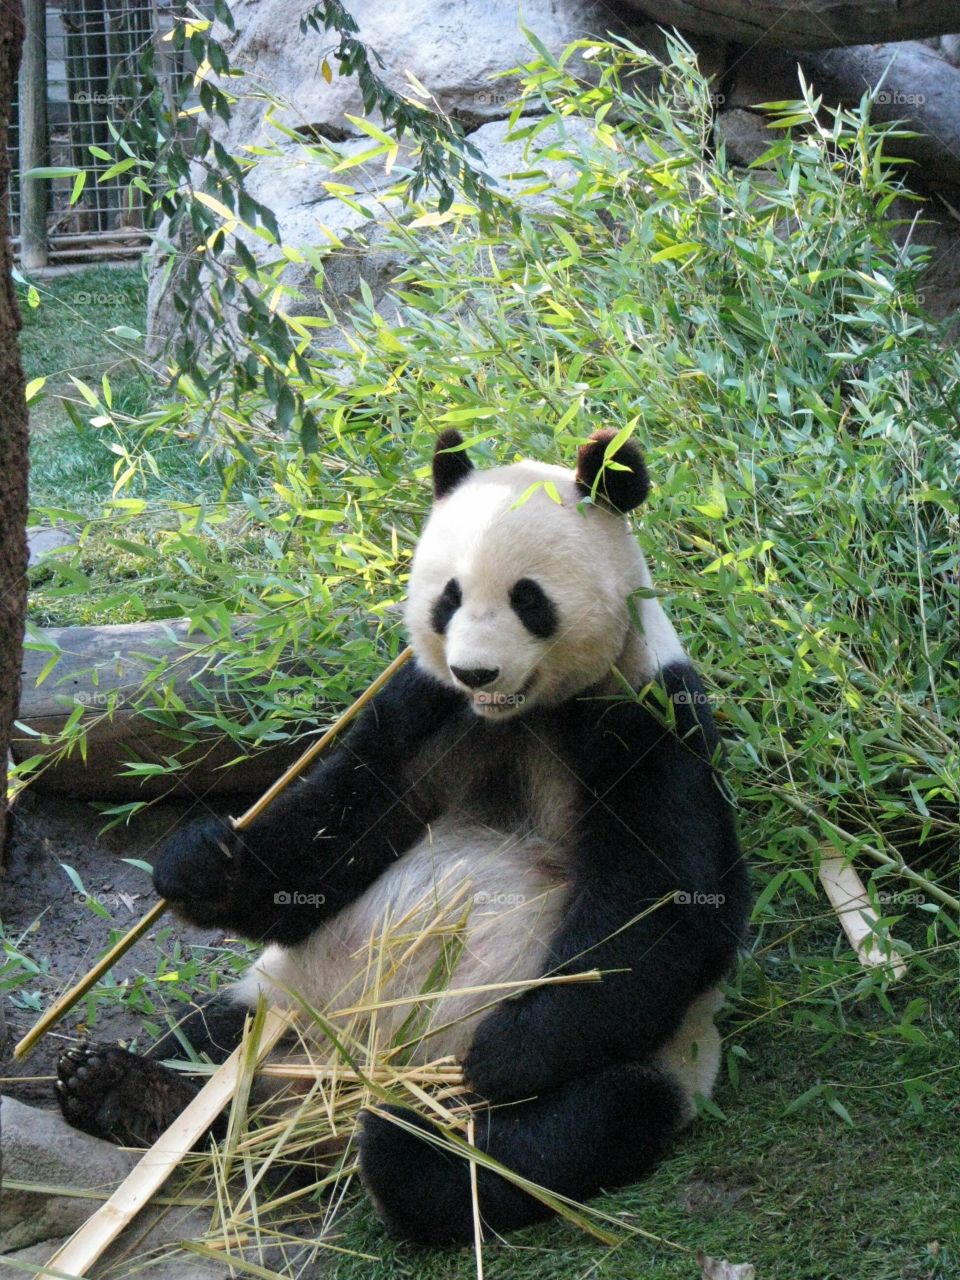 Cute panda playing with bamboo stick 